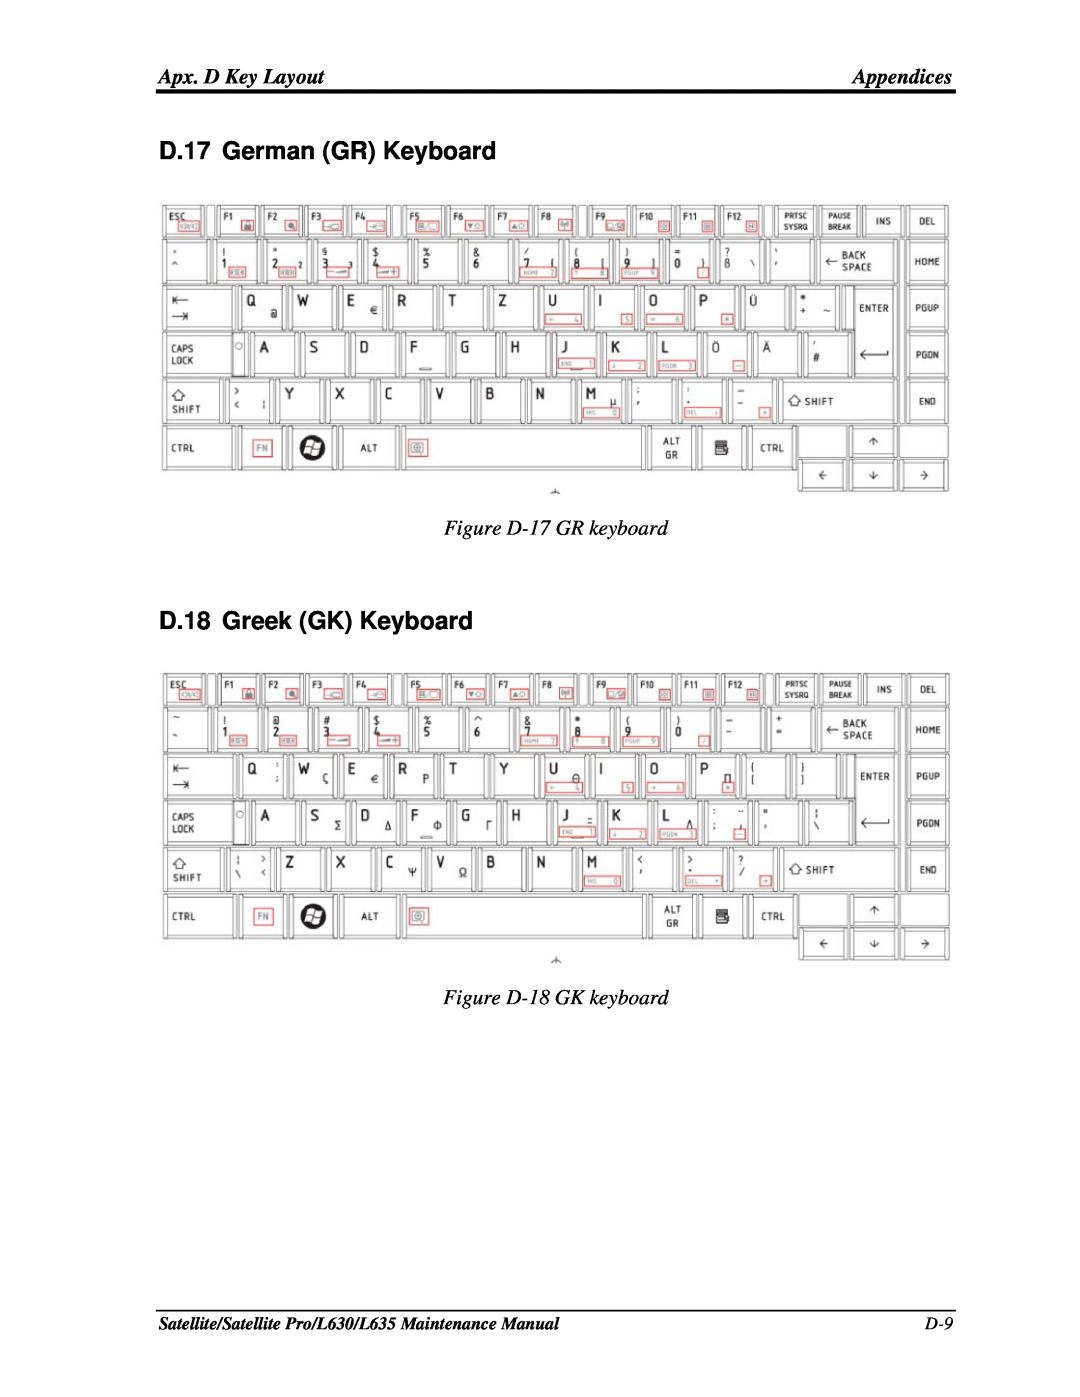 Toshiba L635, L630 manual D.17 German GR Keyboard, D.18 Greek GK Keyboard, Figure D-17 GR keyboard, Figure D-18 GK keyboard 